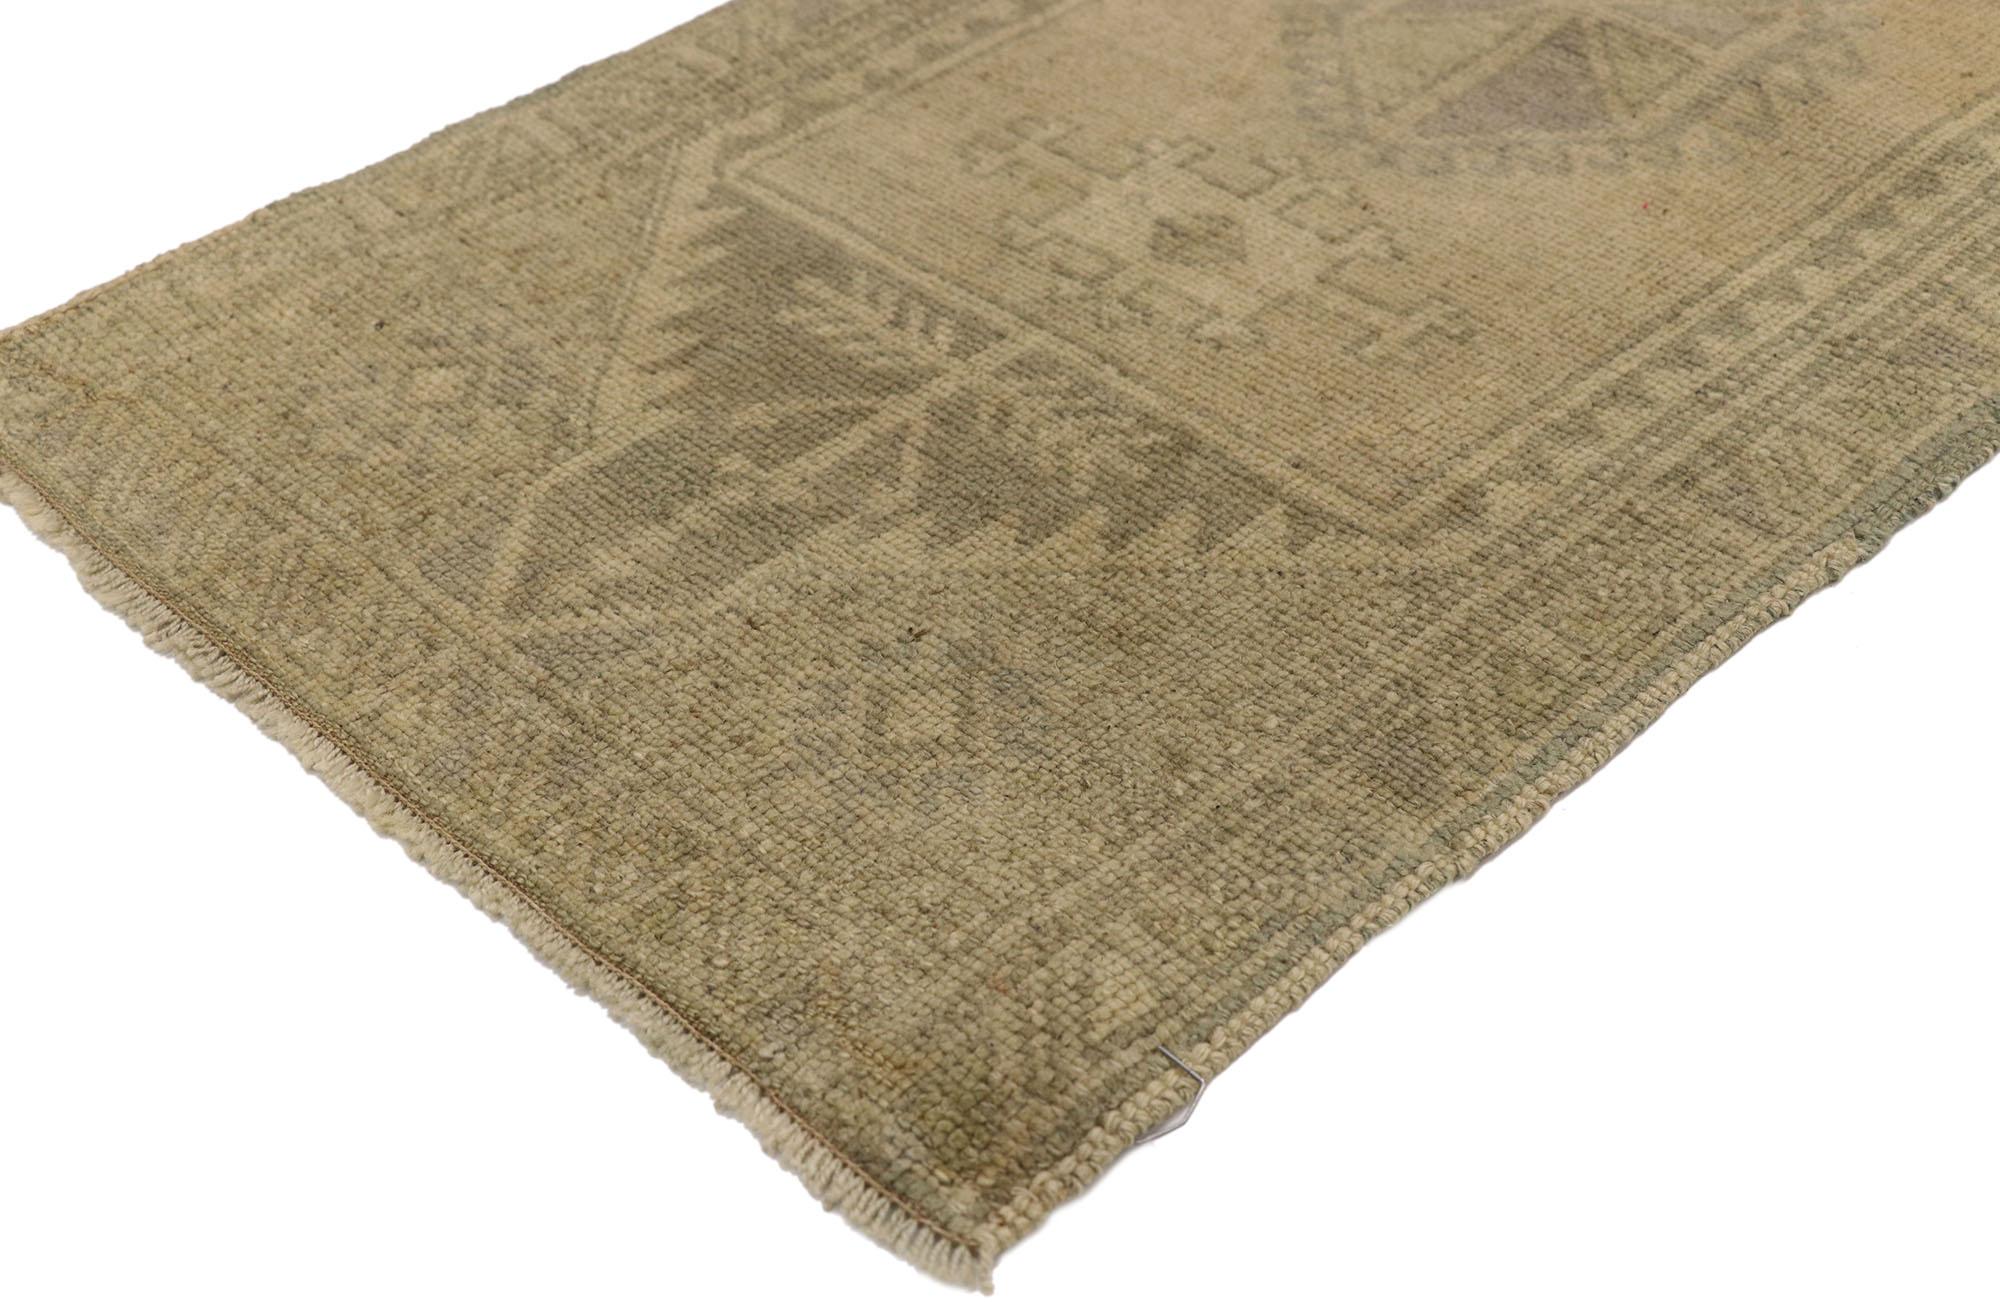 51248 Tapis turc vintage Yastik, 01'08 x 03'08. Les tapis turcs Yastik lavés à l'ancienne sont l'incarnation de l'artisanat traditionnel. Ils sont soumis à un processus de lavage méticuleux qui leur confère un aspect adouci et vieilli tout en